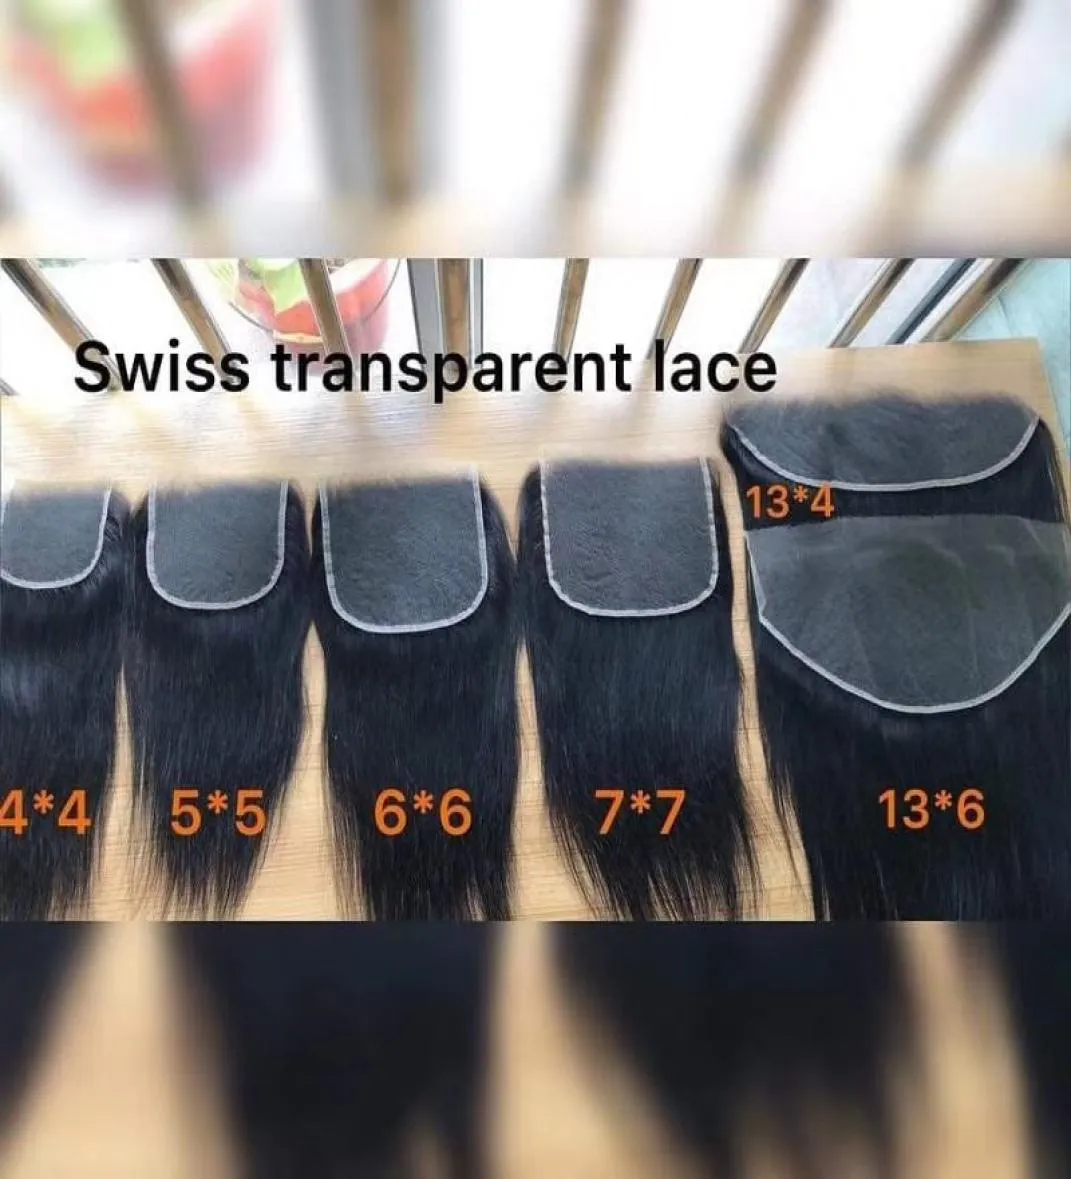 Fermetures frontales en dentelle HD transparente suisse 4x4 5x5 6x6 7x7 13x4 13x6 oreille à oreille pré-épilées avec Hairline naturel 5428764